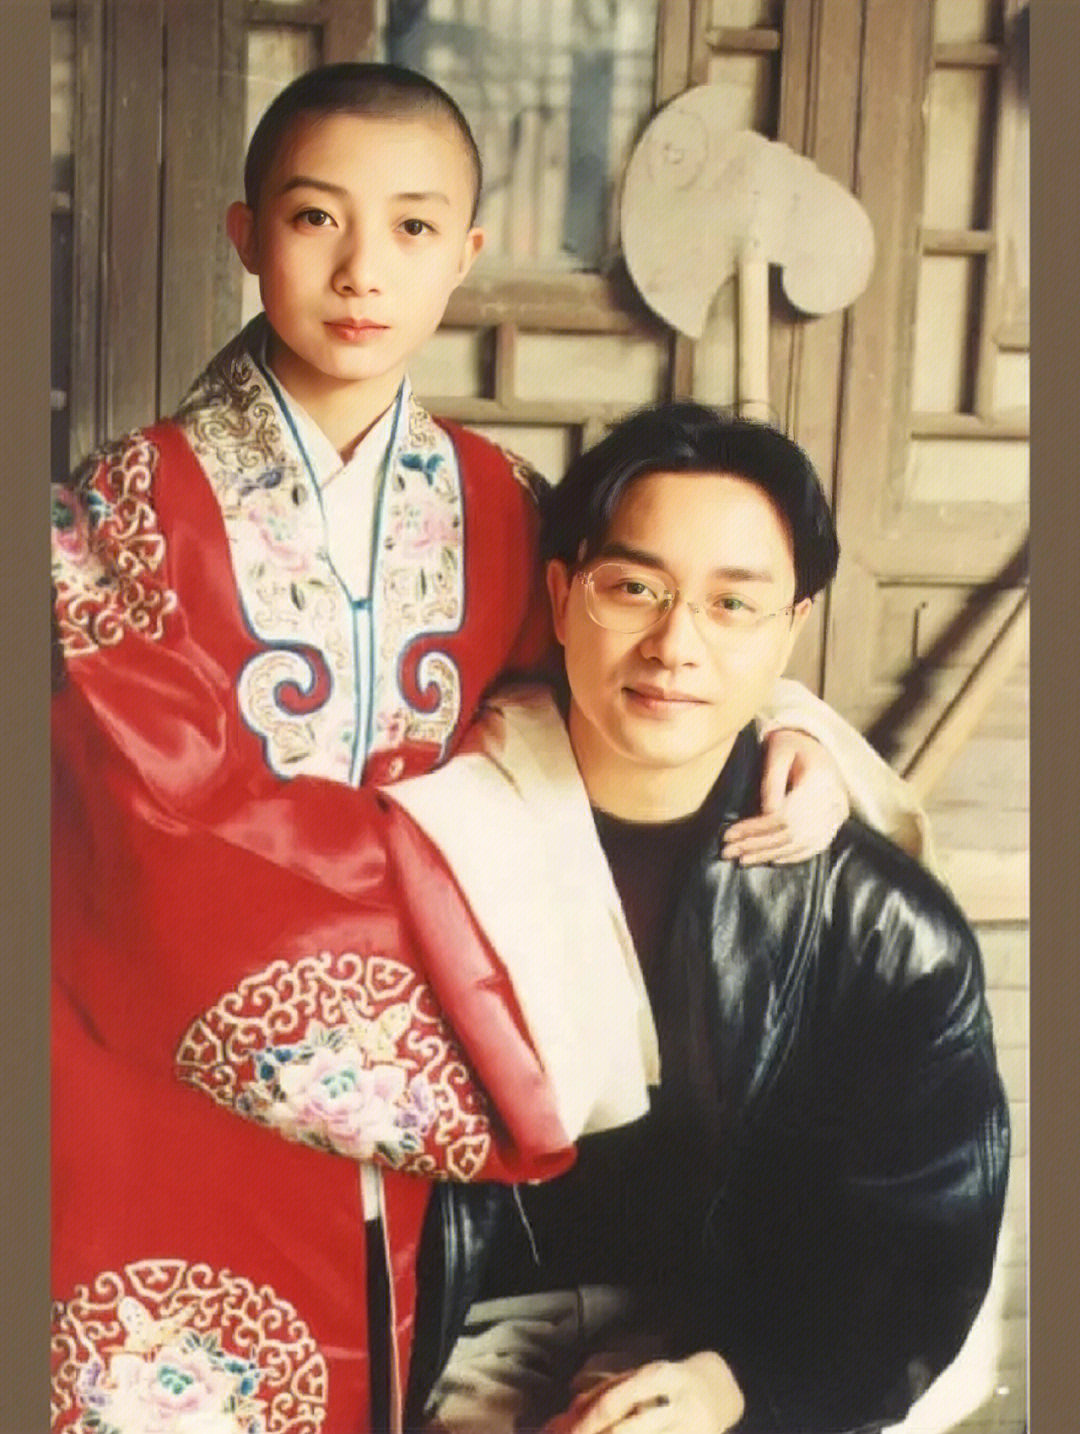 扮演少年程蝶衣的尹治是北京人,出生于五代梨园世家(1976),后来考上了